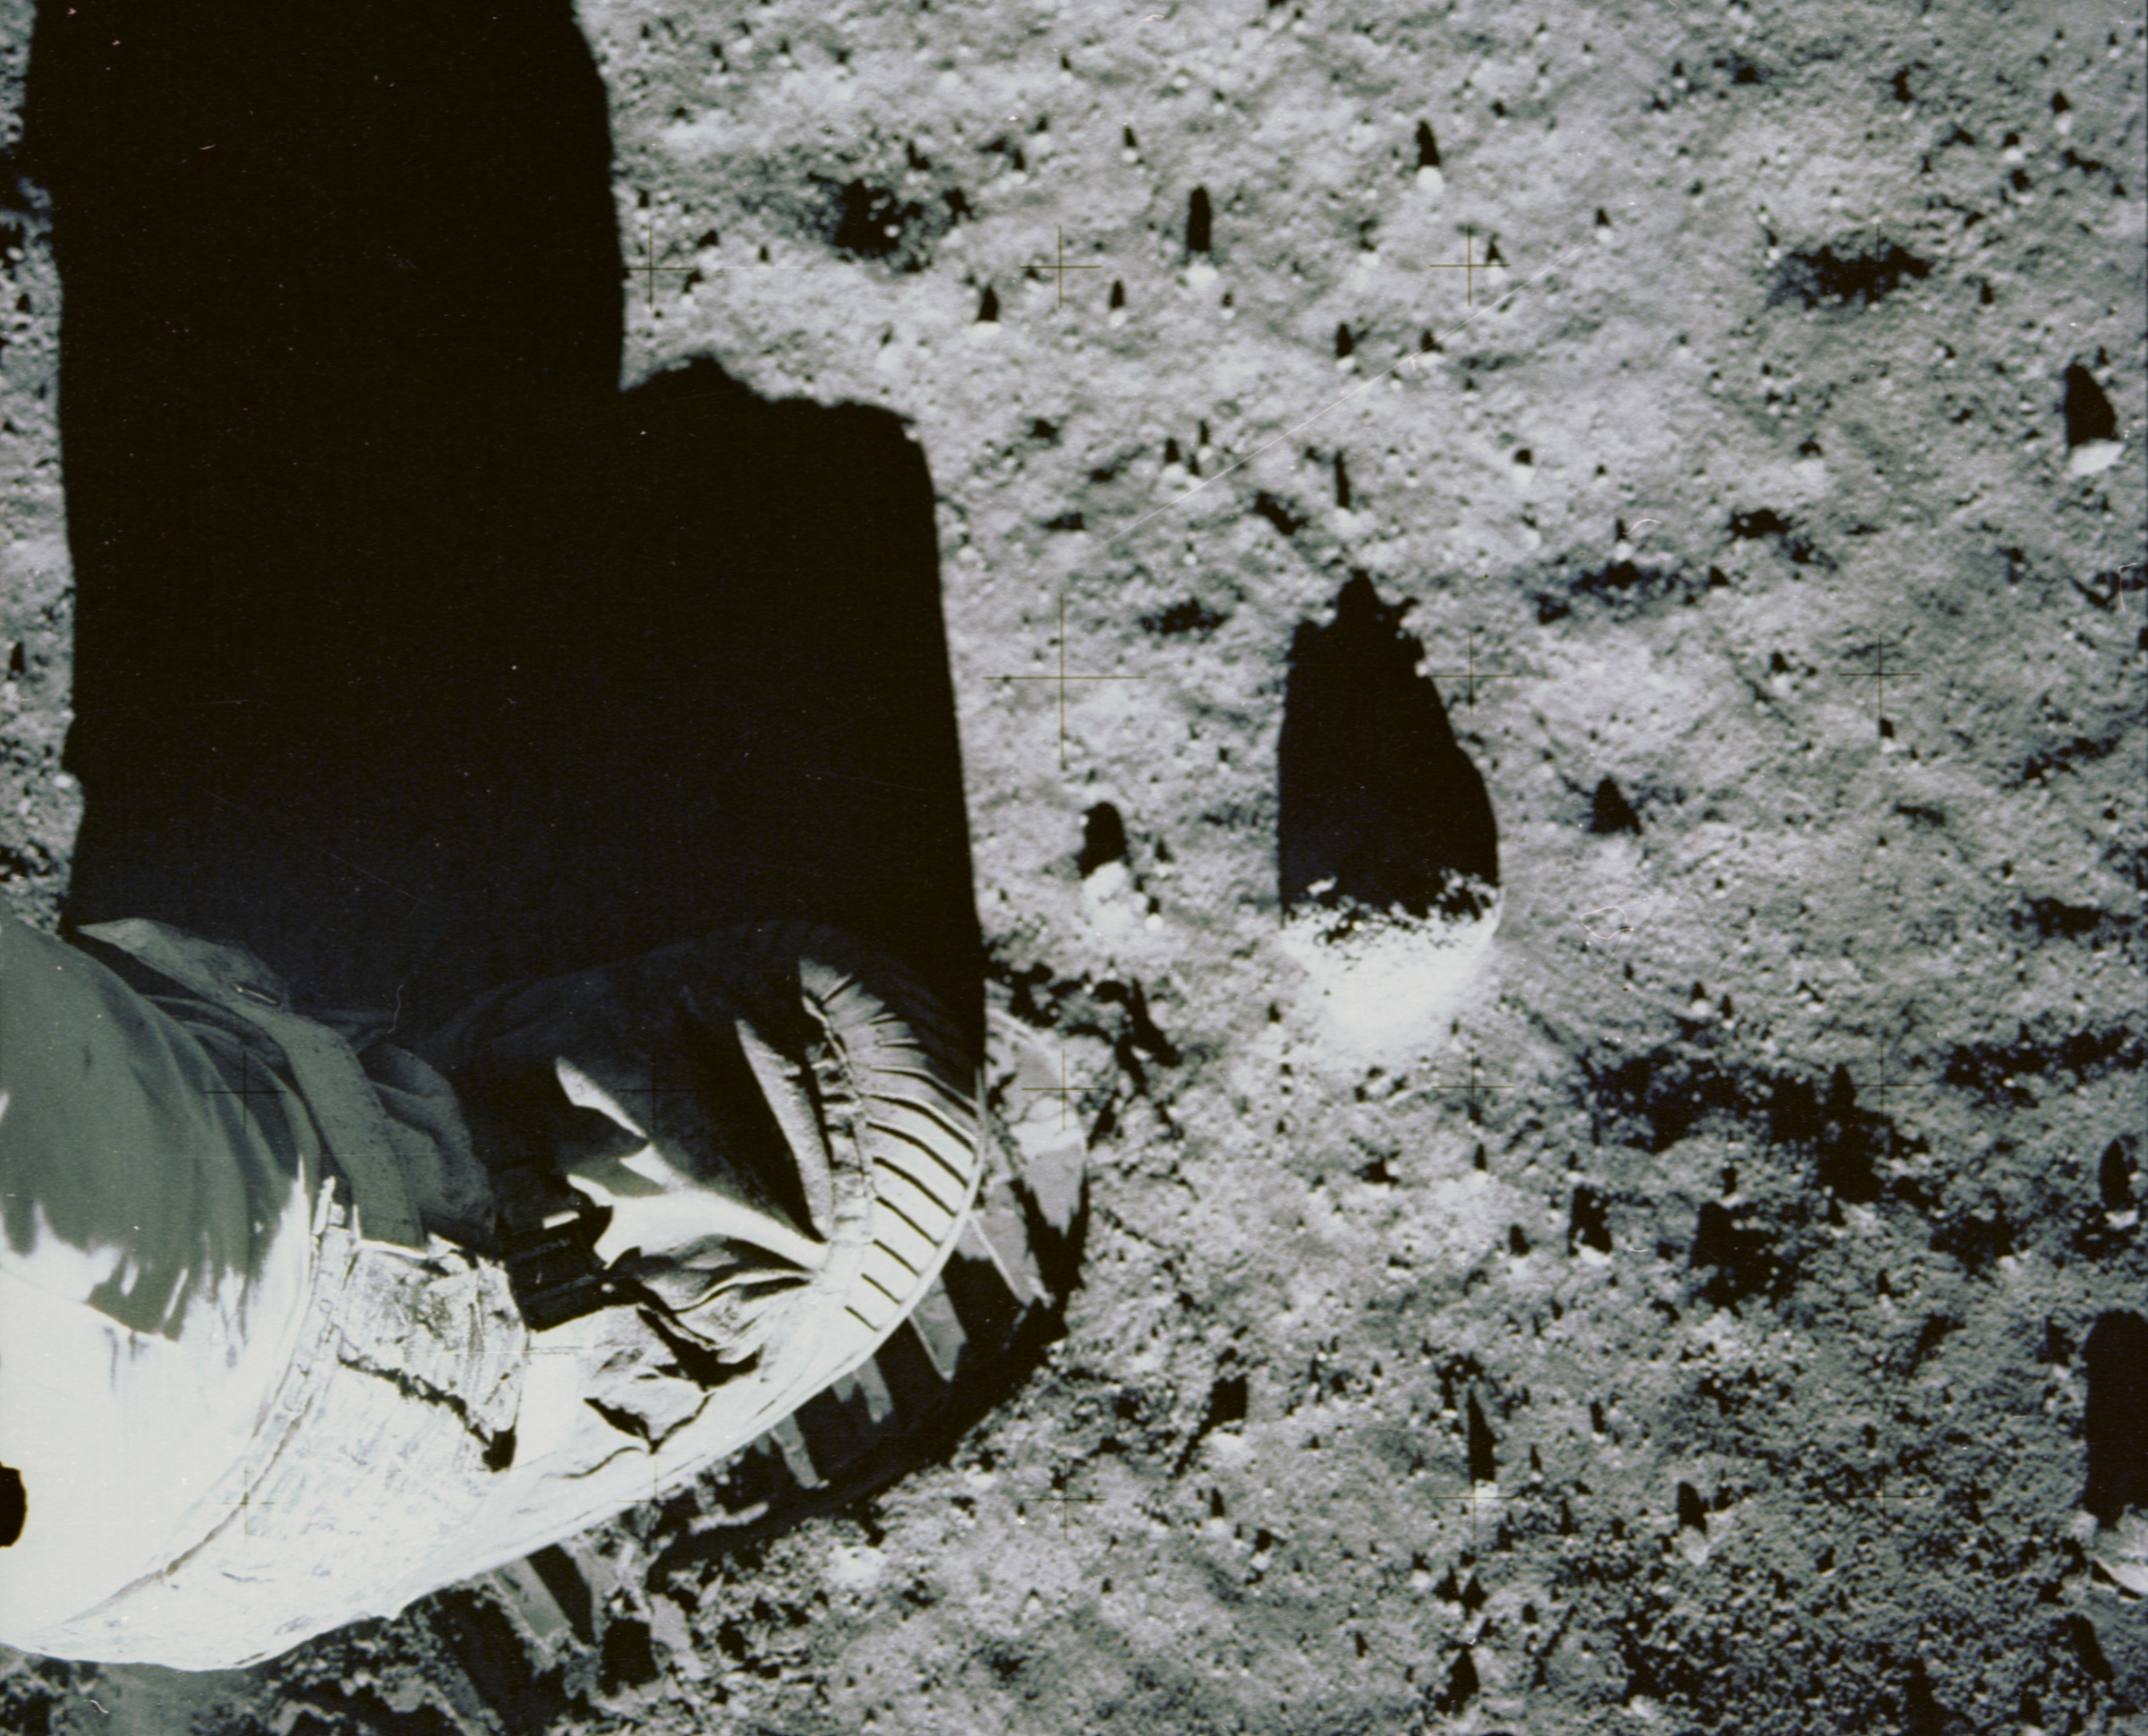 Apollo 11 Foot Print